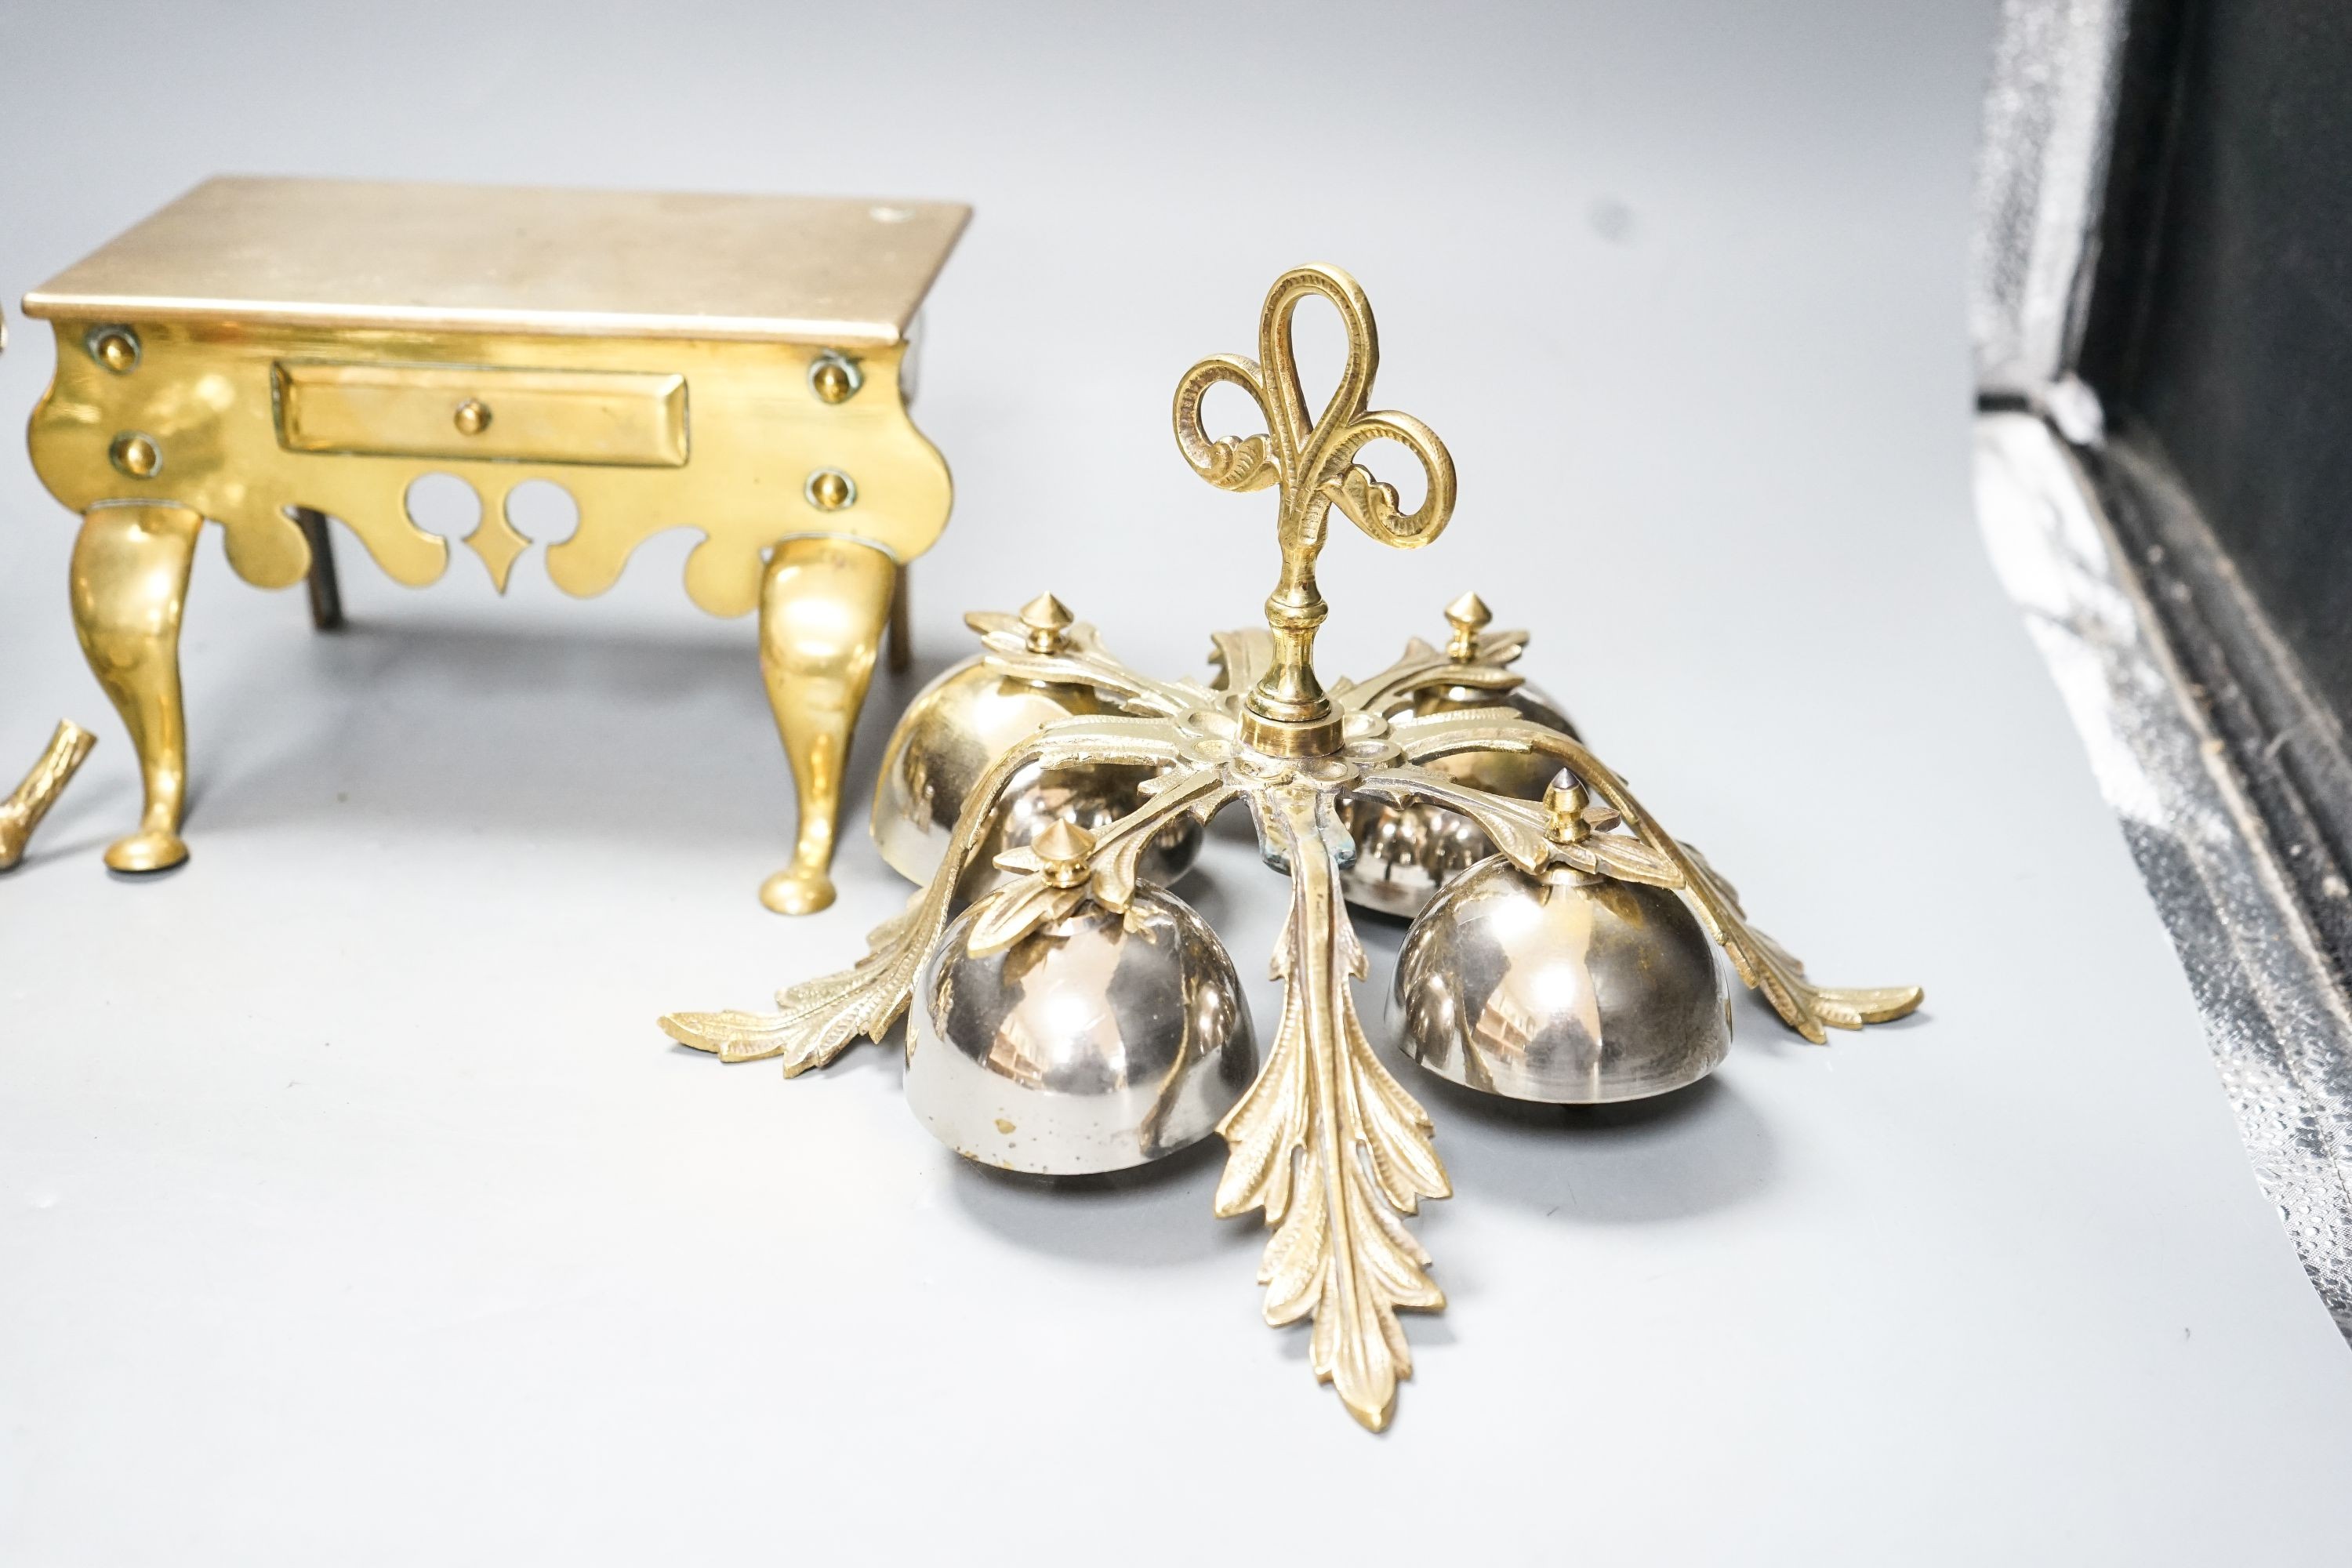 A brass Jockey-related inkwell, a miniature brass footman and brass hand bells